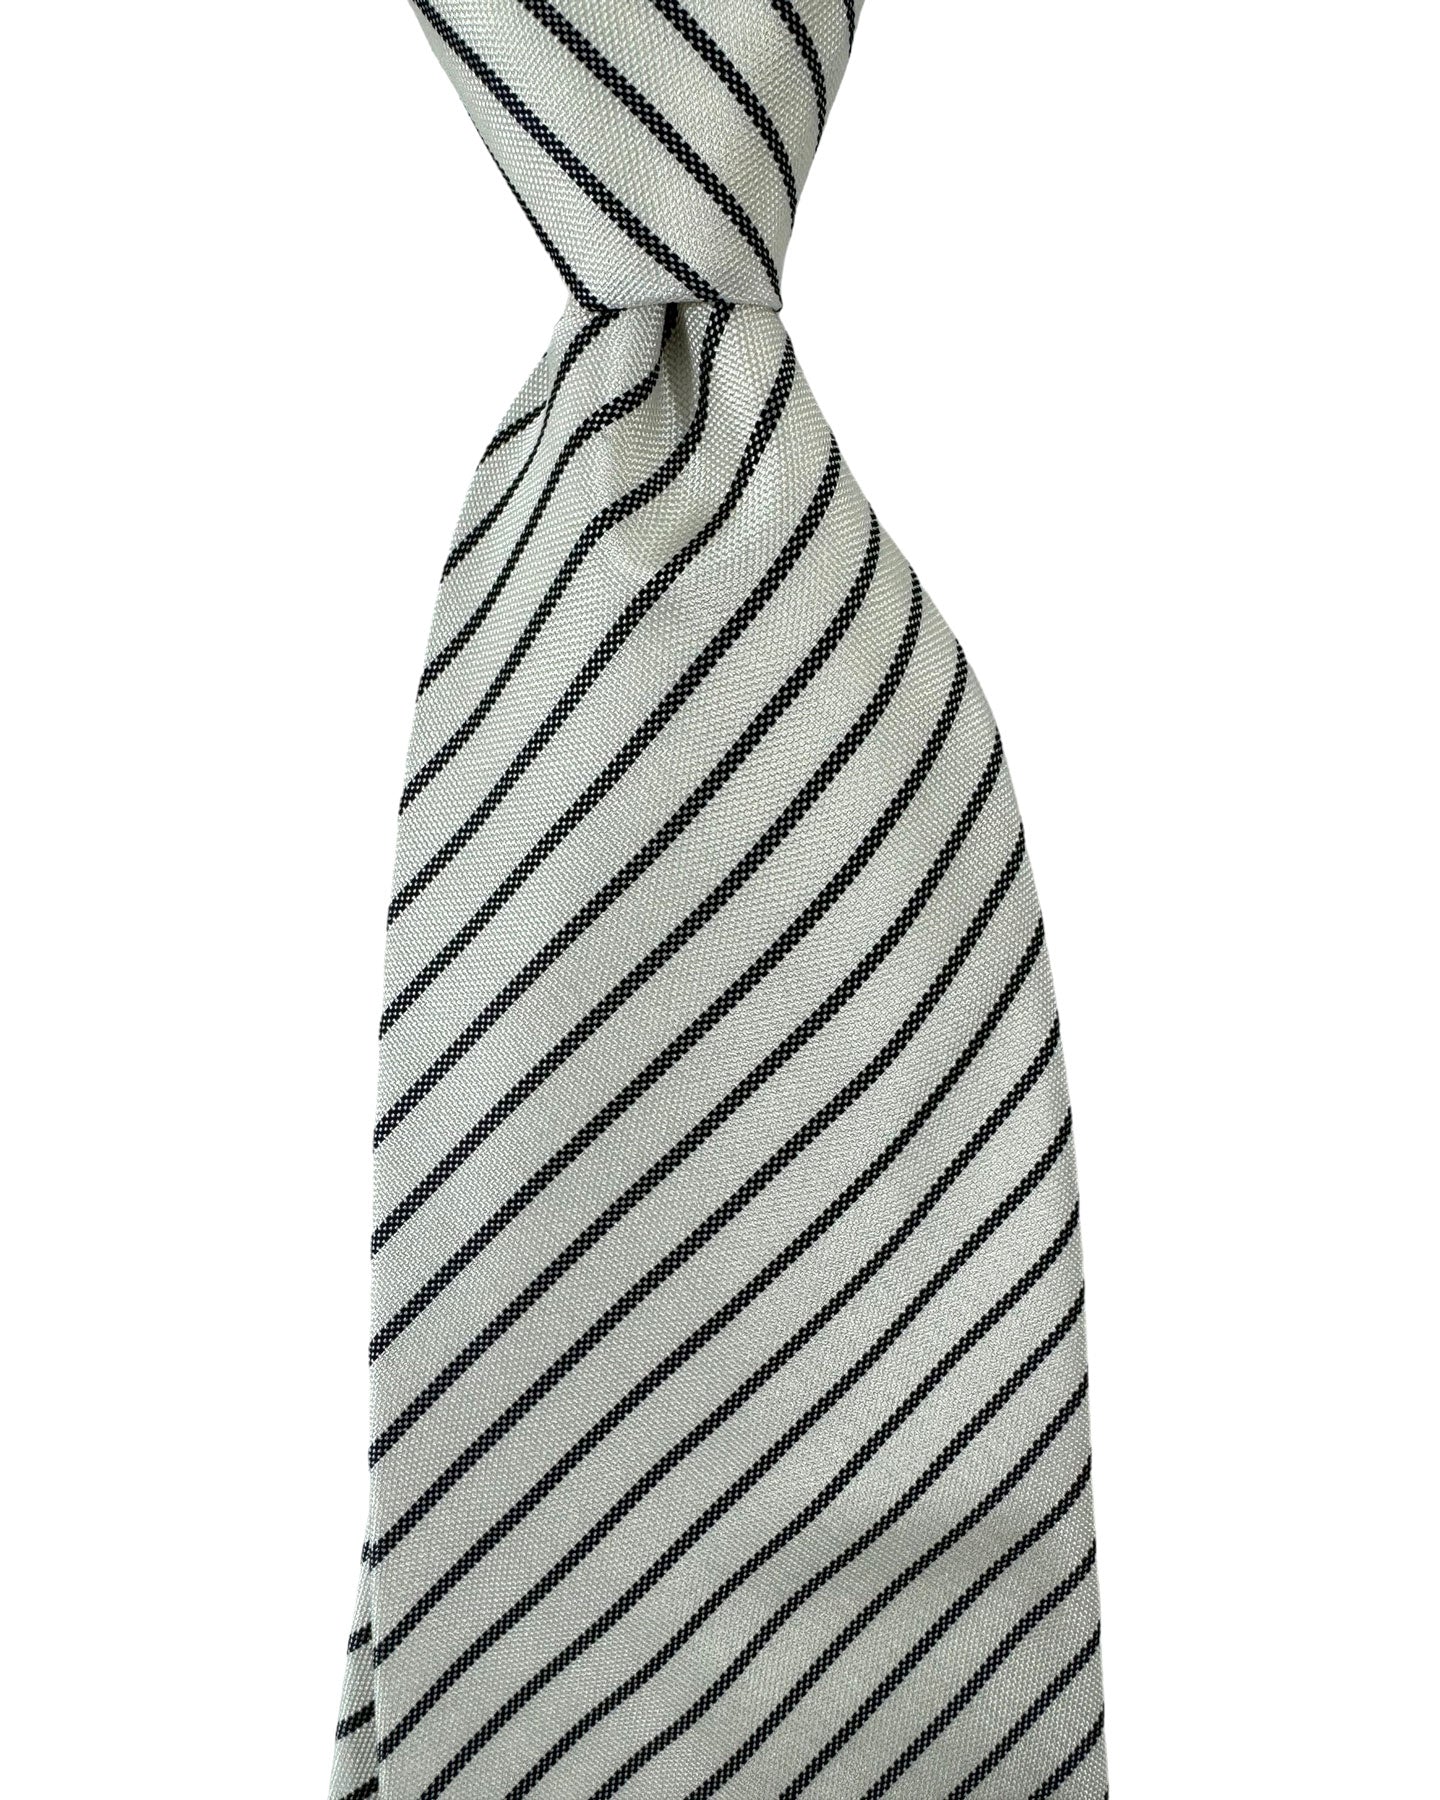 Versace Silk Tie White Black Stripes Design